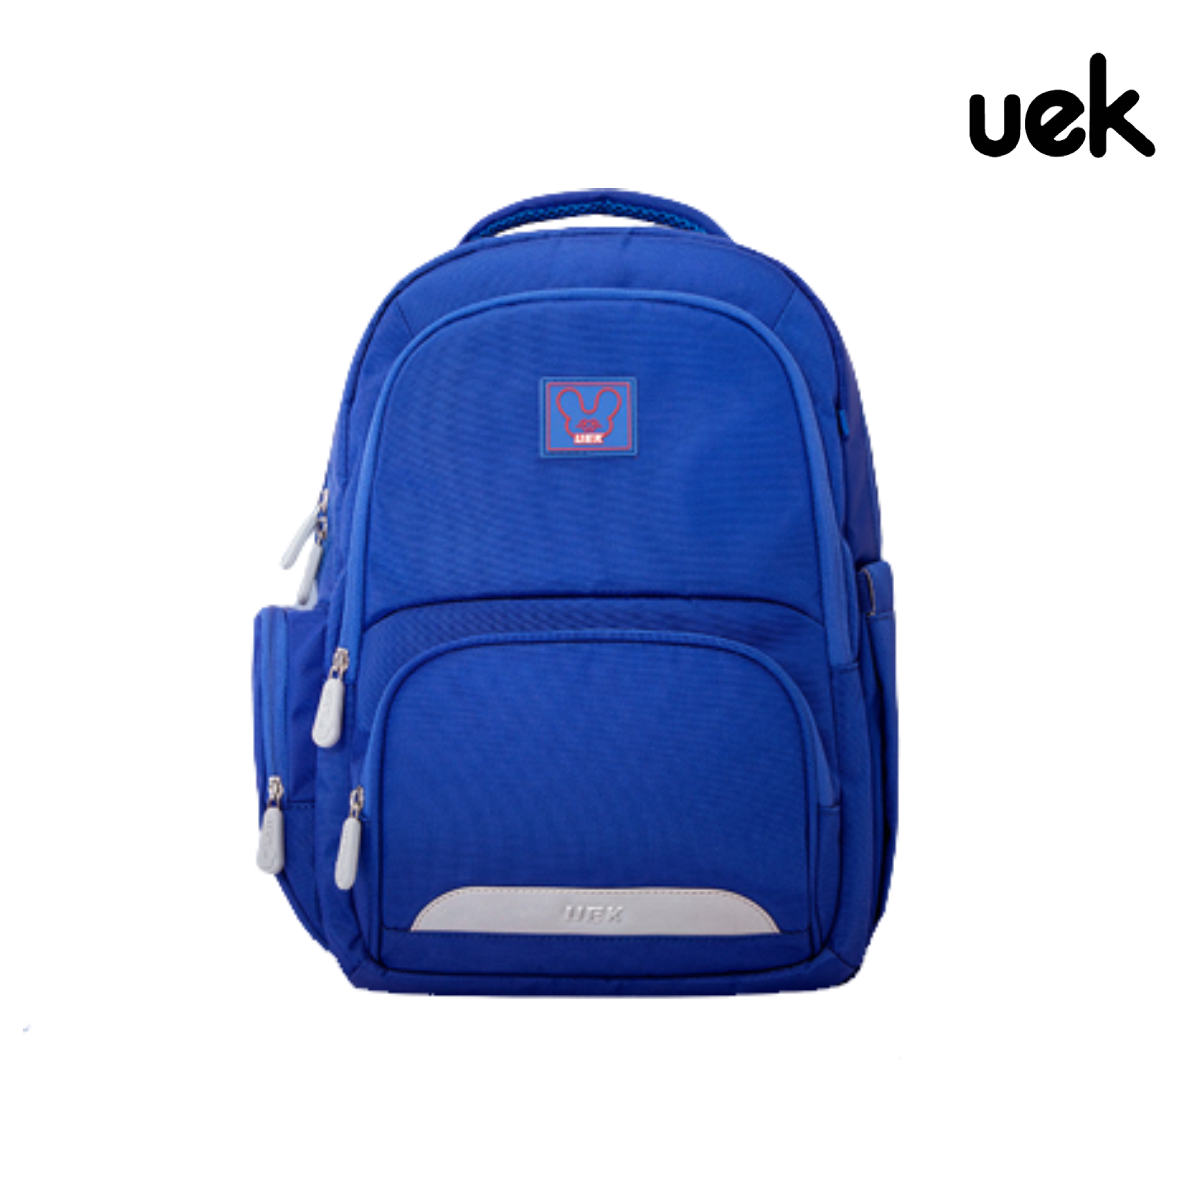 กระเป๋านักเรียน รุ่น Magic สีน้ำเงิน (XL)